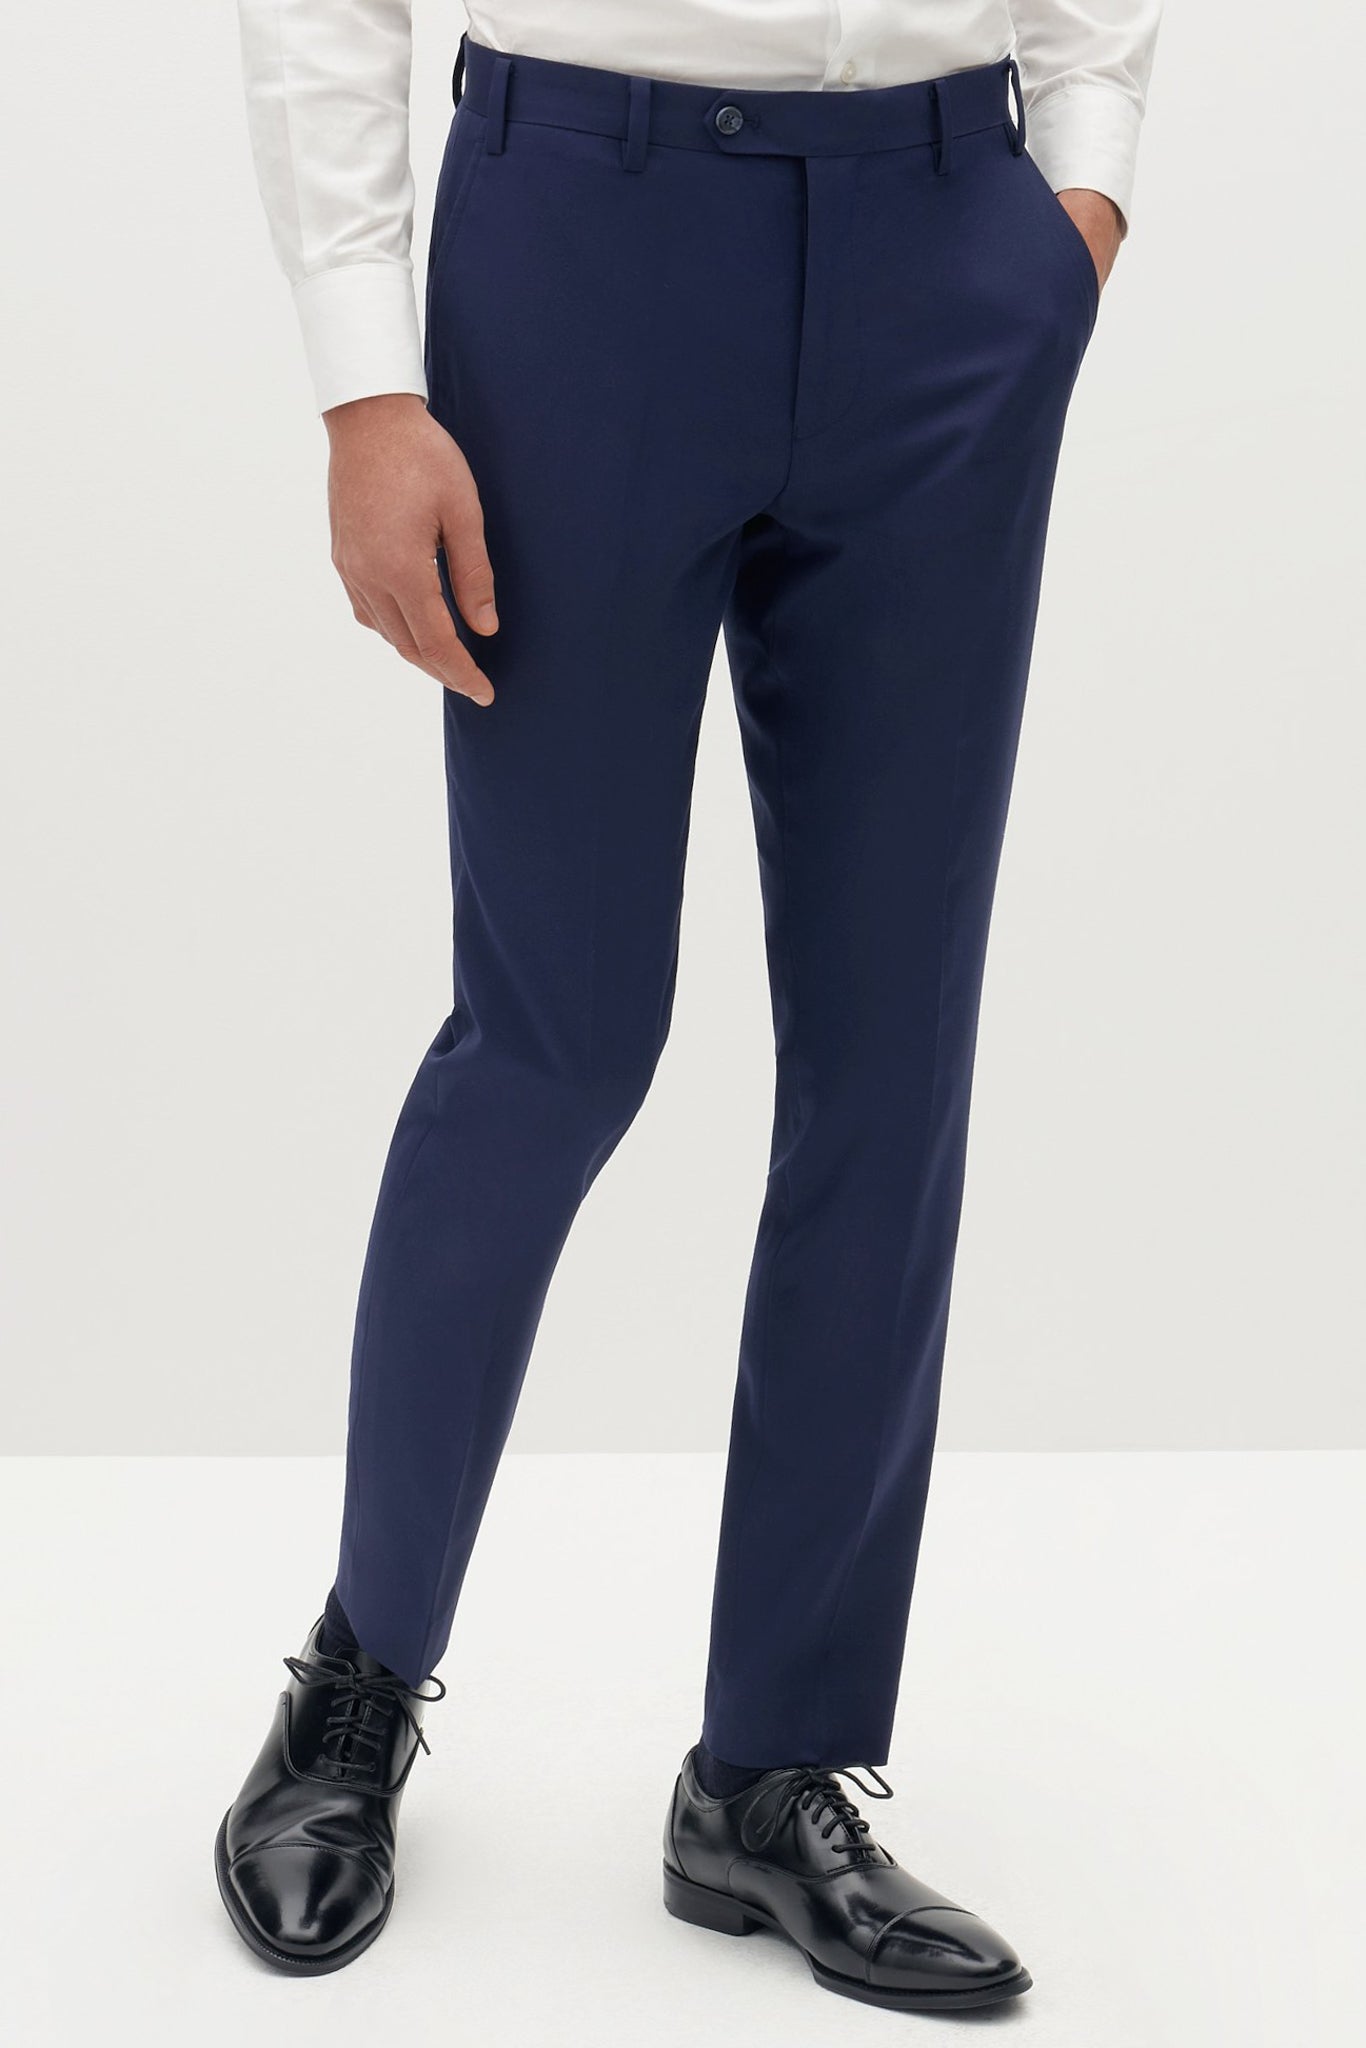 ASOS DESIGN Skinny Smart Trousers In Grey, $14, Asos